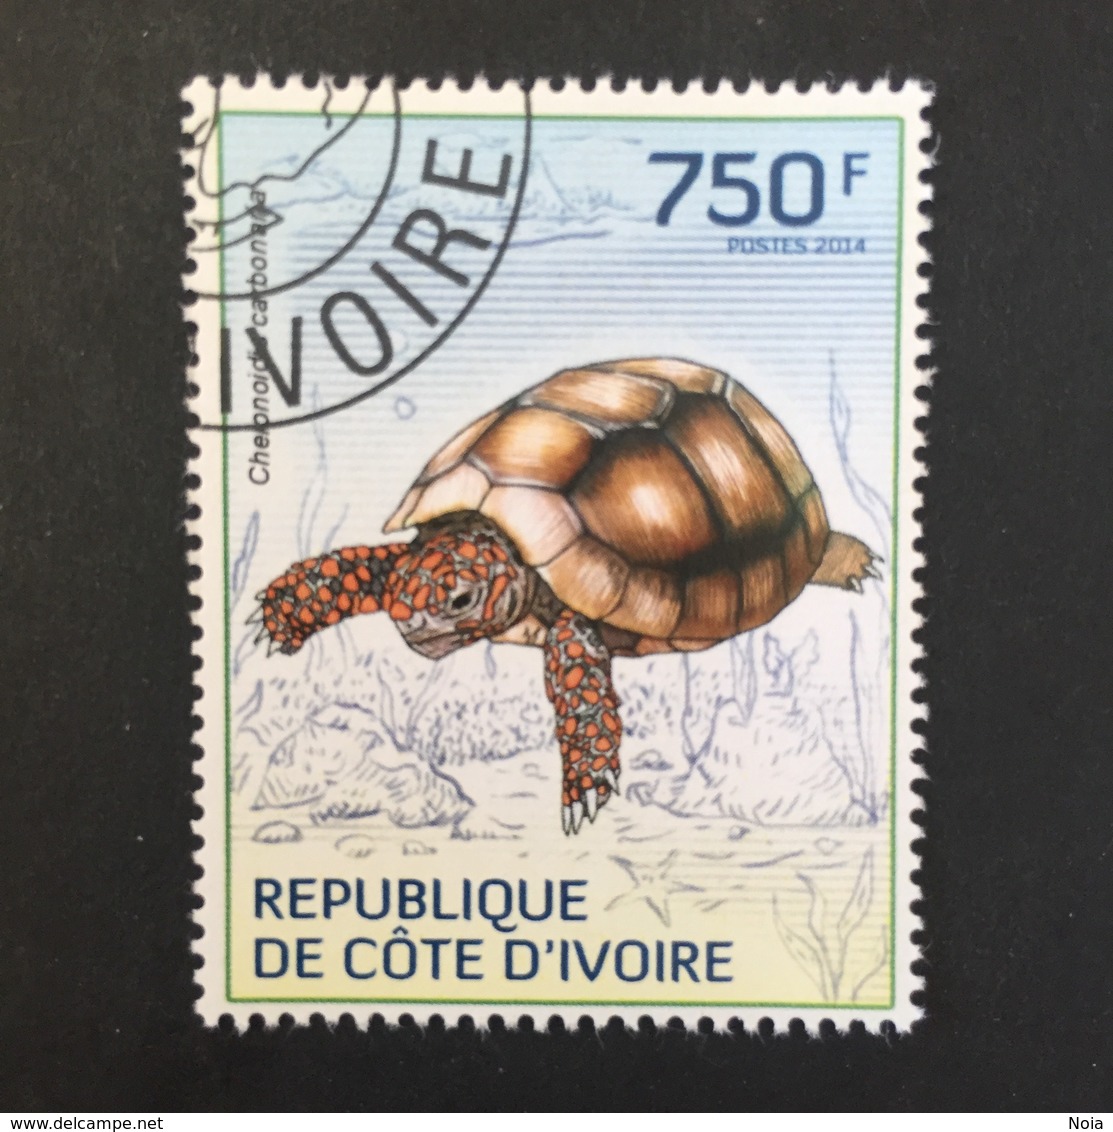 COTE D’ IVOIRE REPUBLIC. TURTLES. 2014. (B0807C) - Turtles